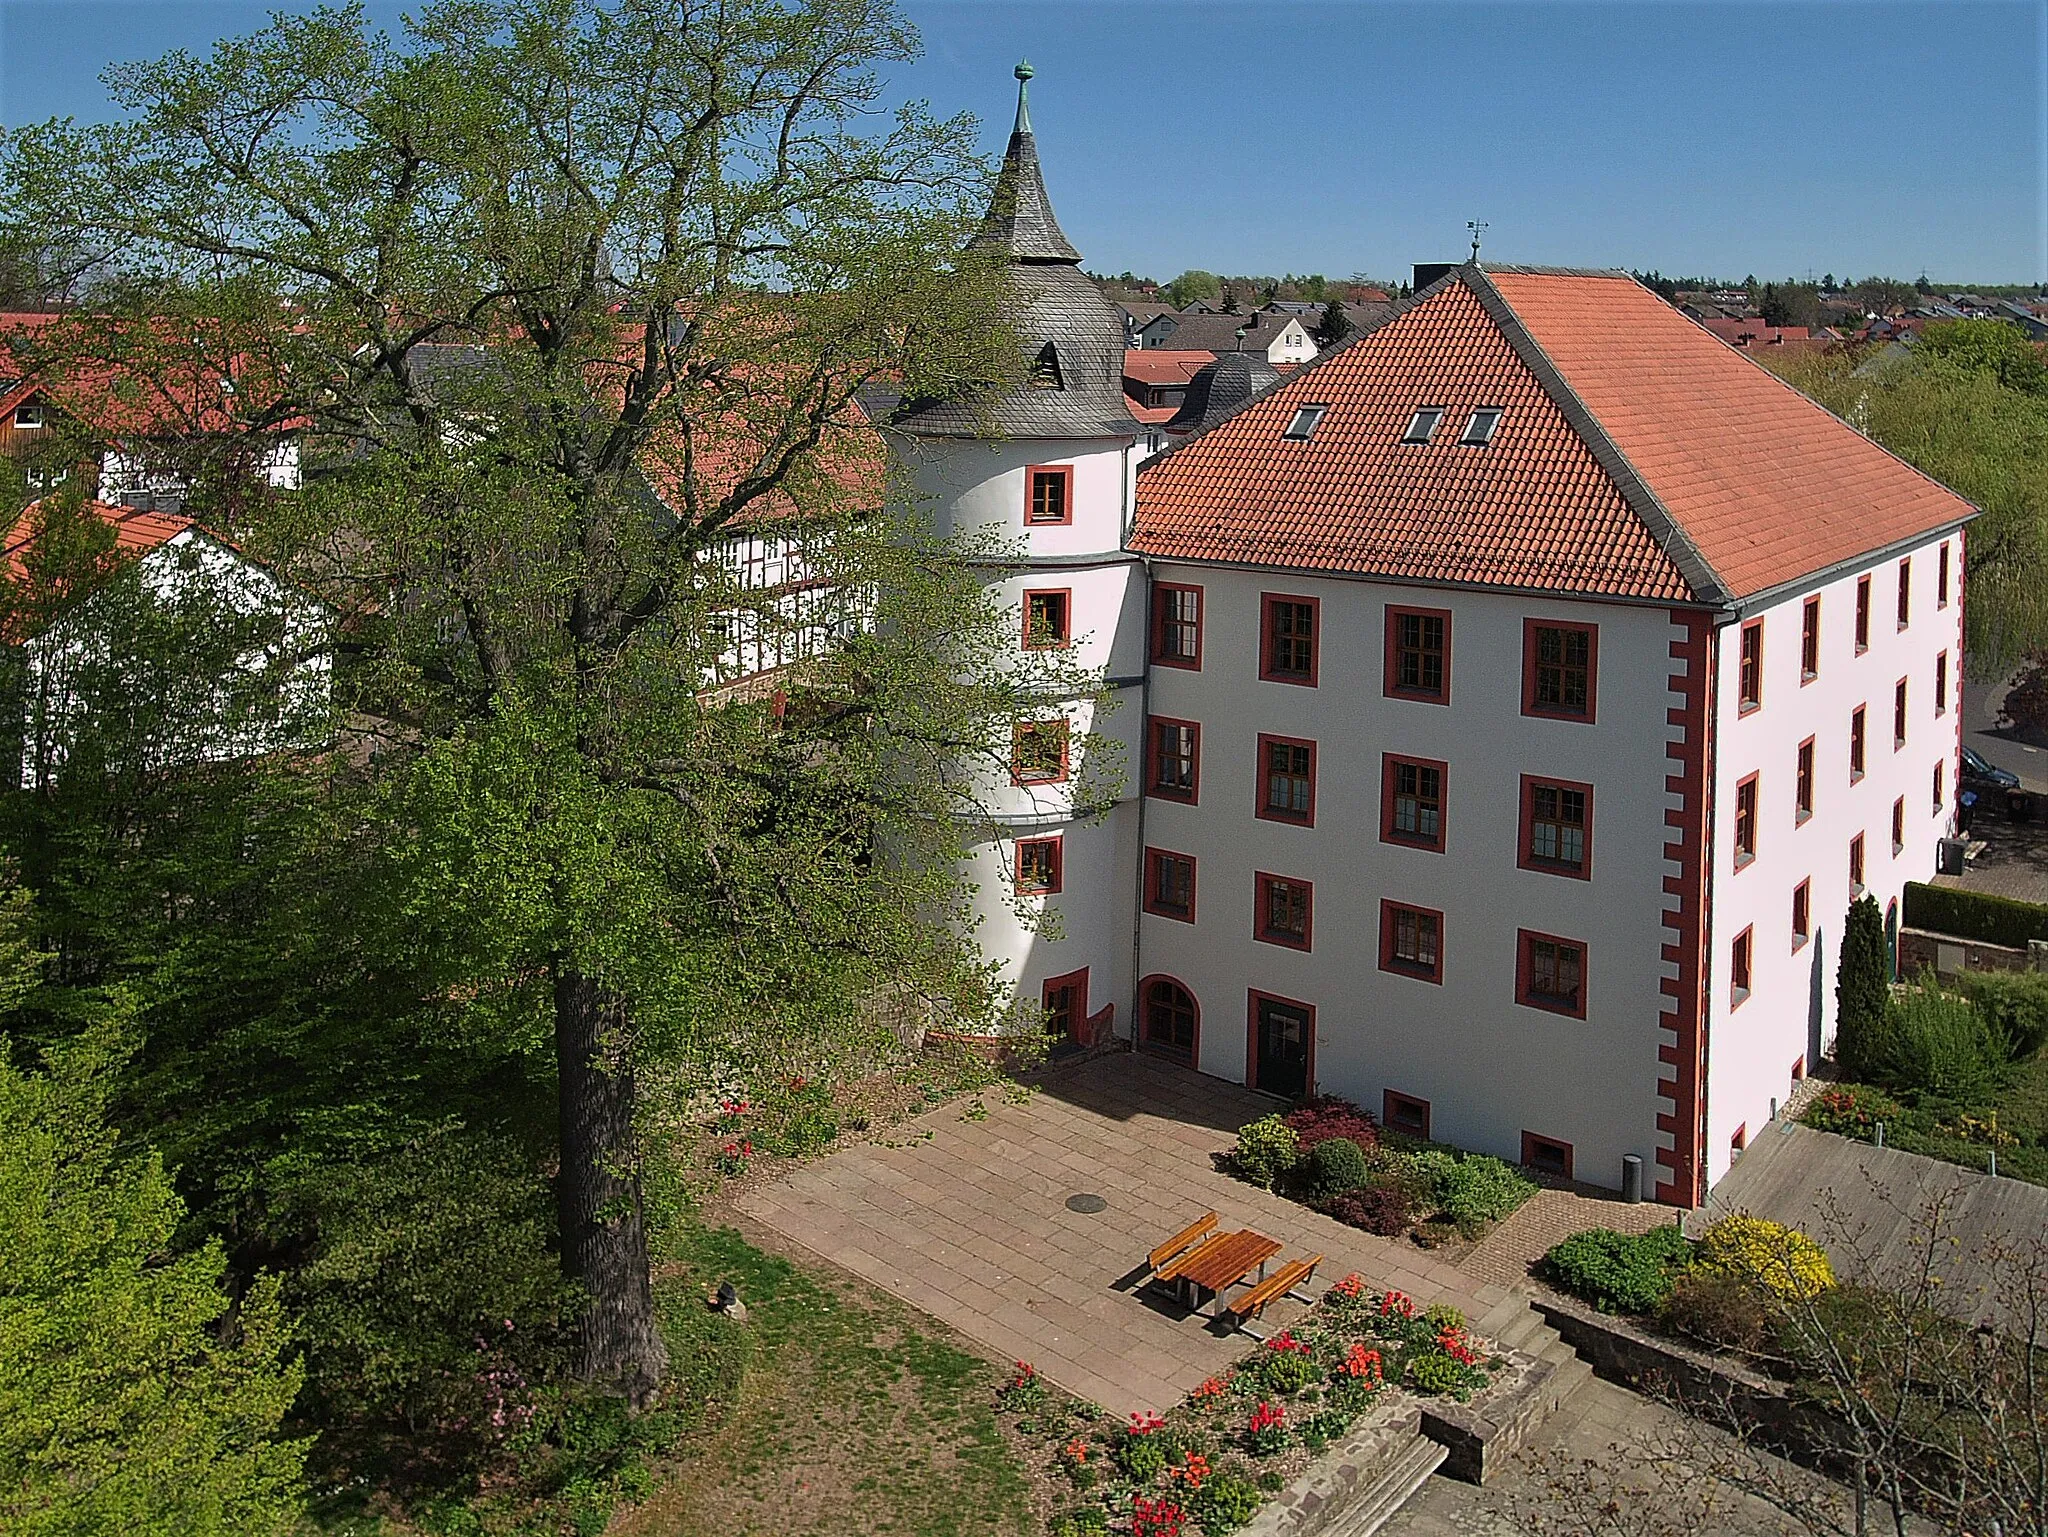 Image of Eichenzell